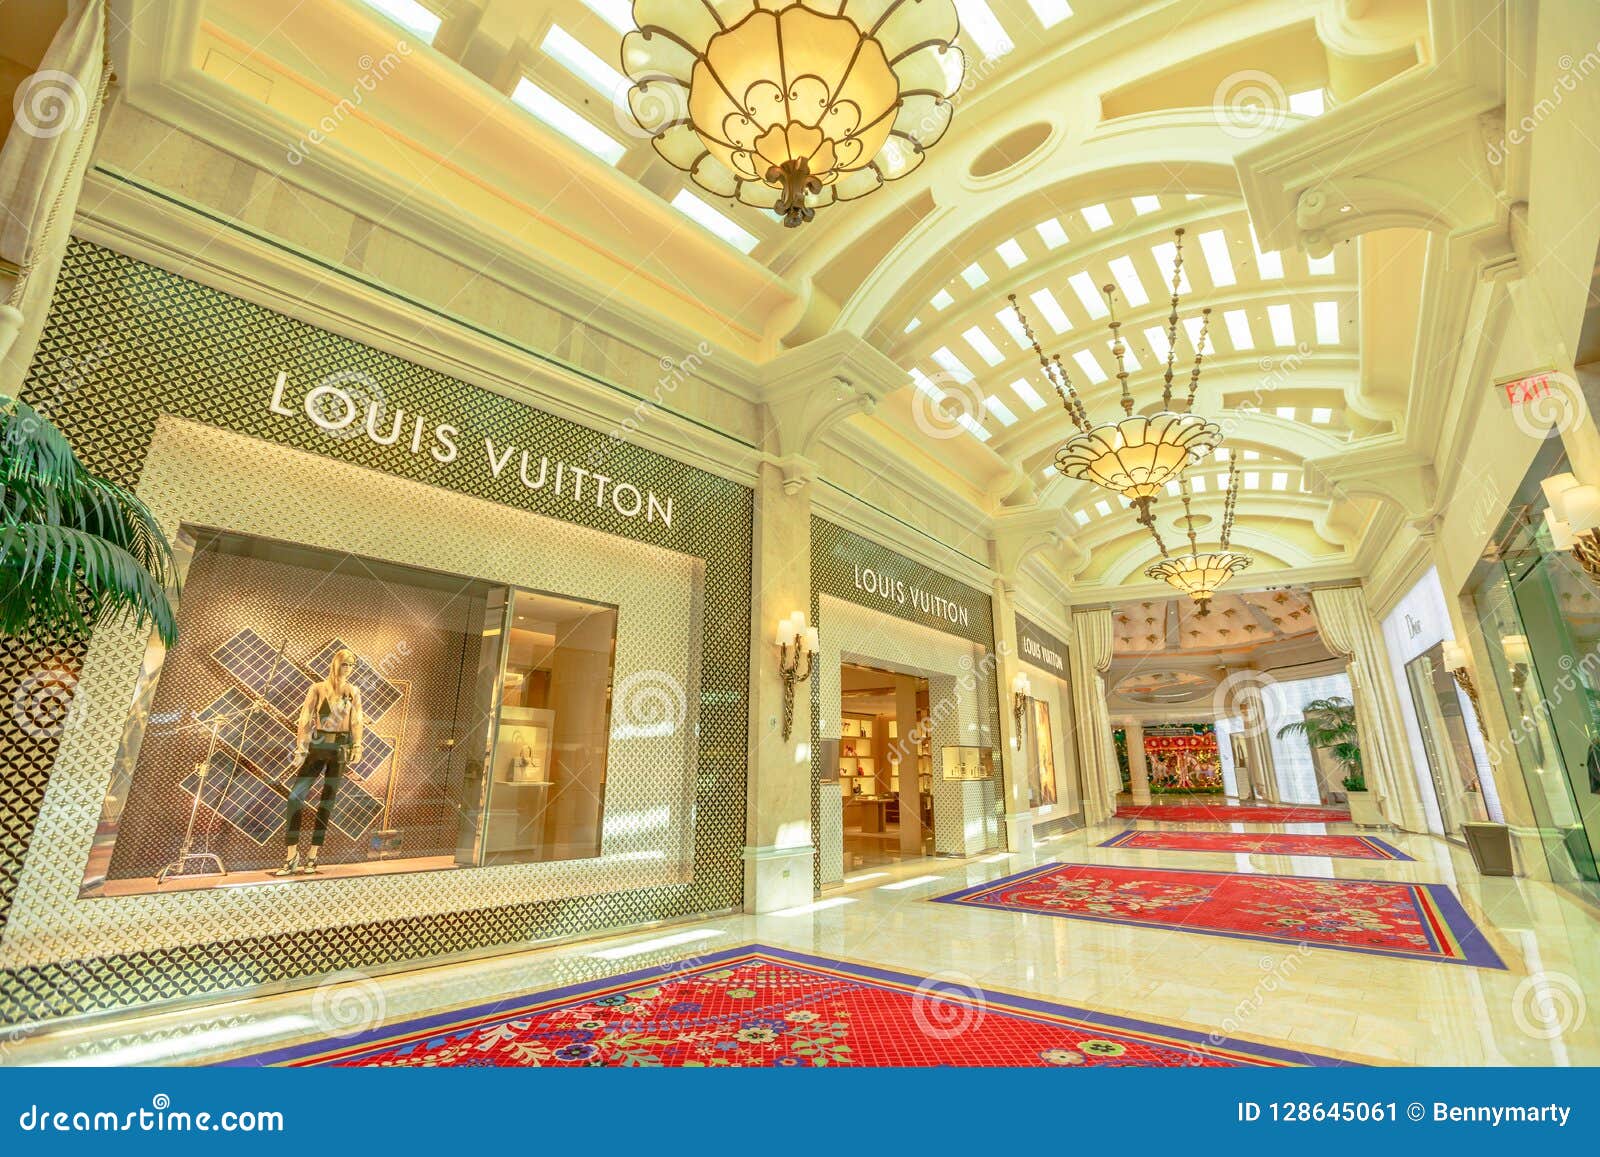 Louis Vuitton Las Vegas Caesars Forum Men's store, United States